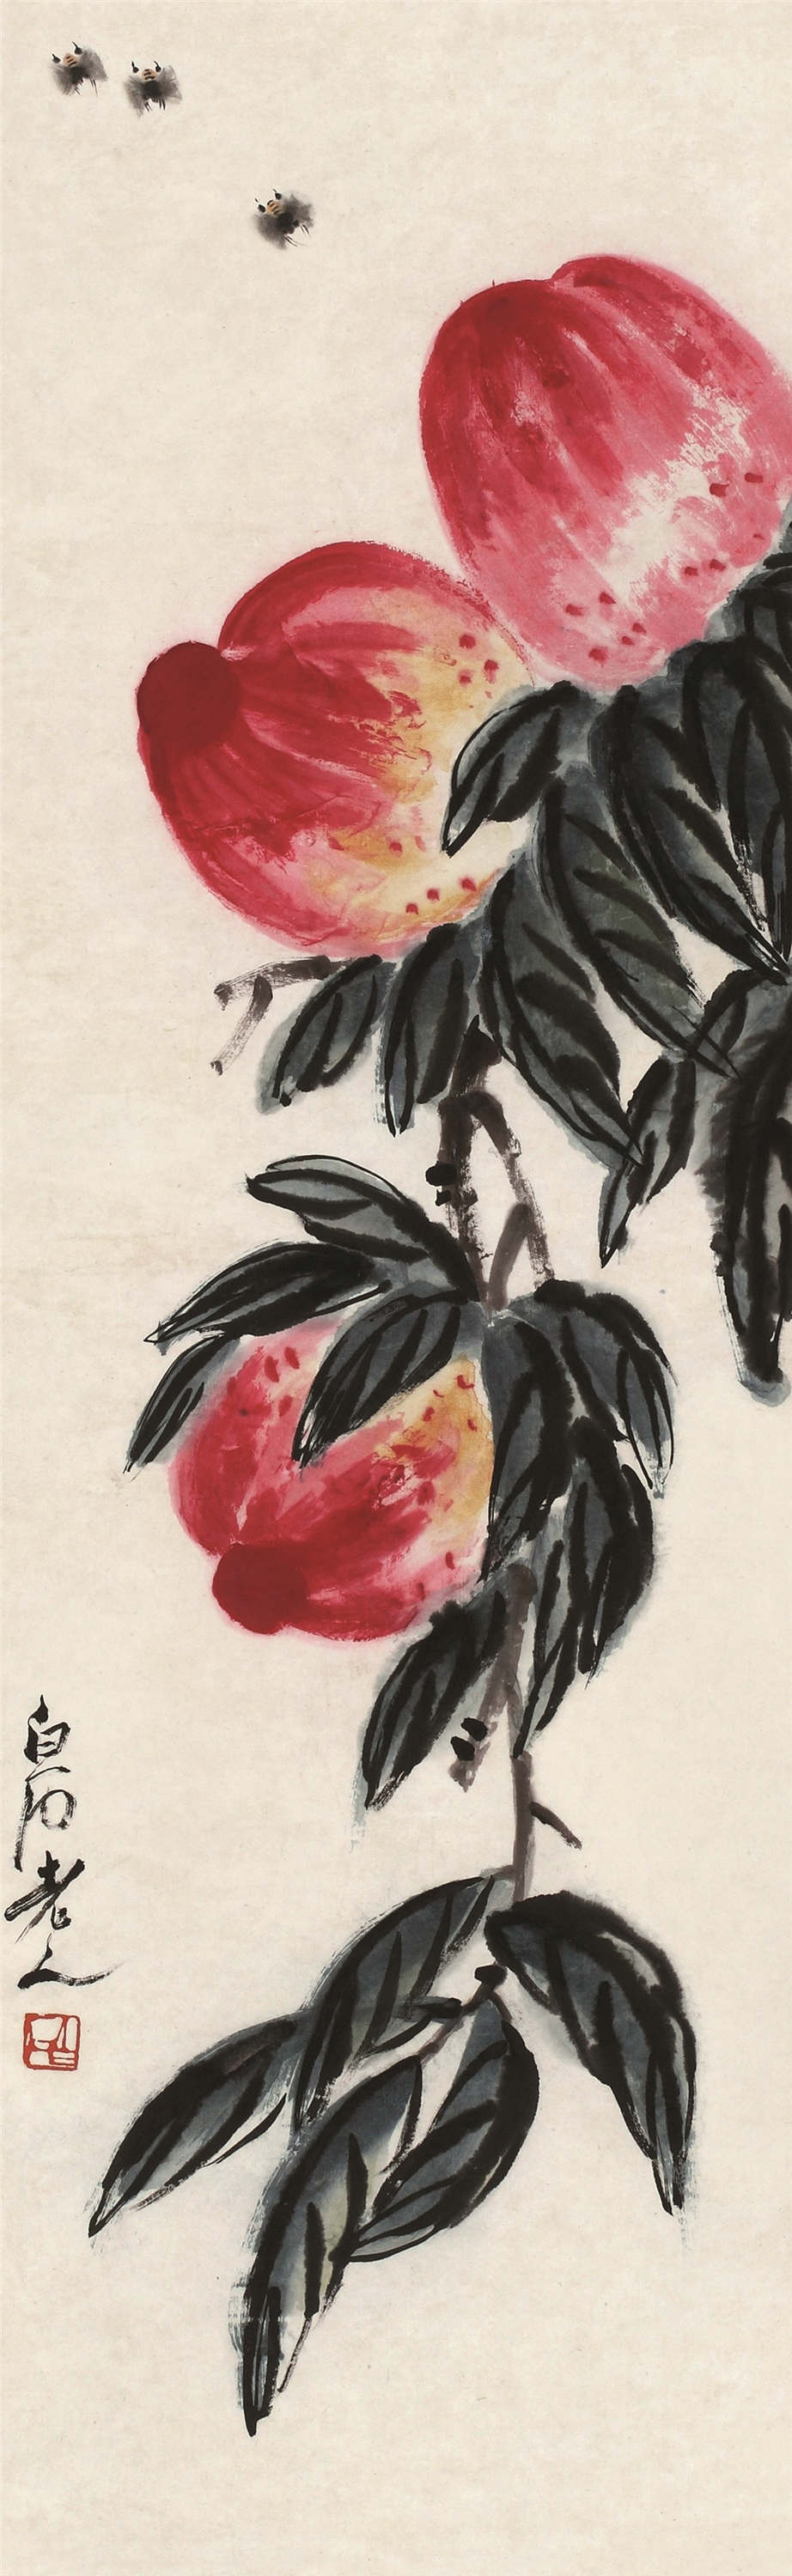 中国画寿桃的落款图片